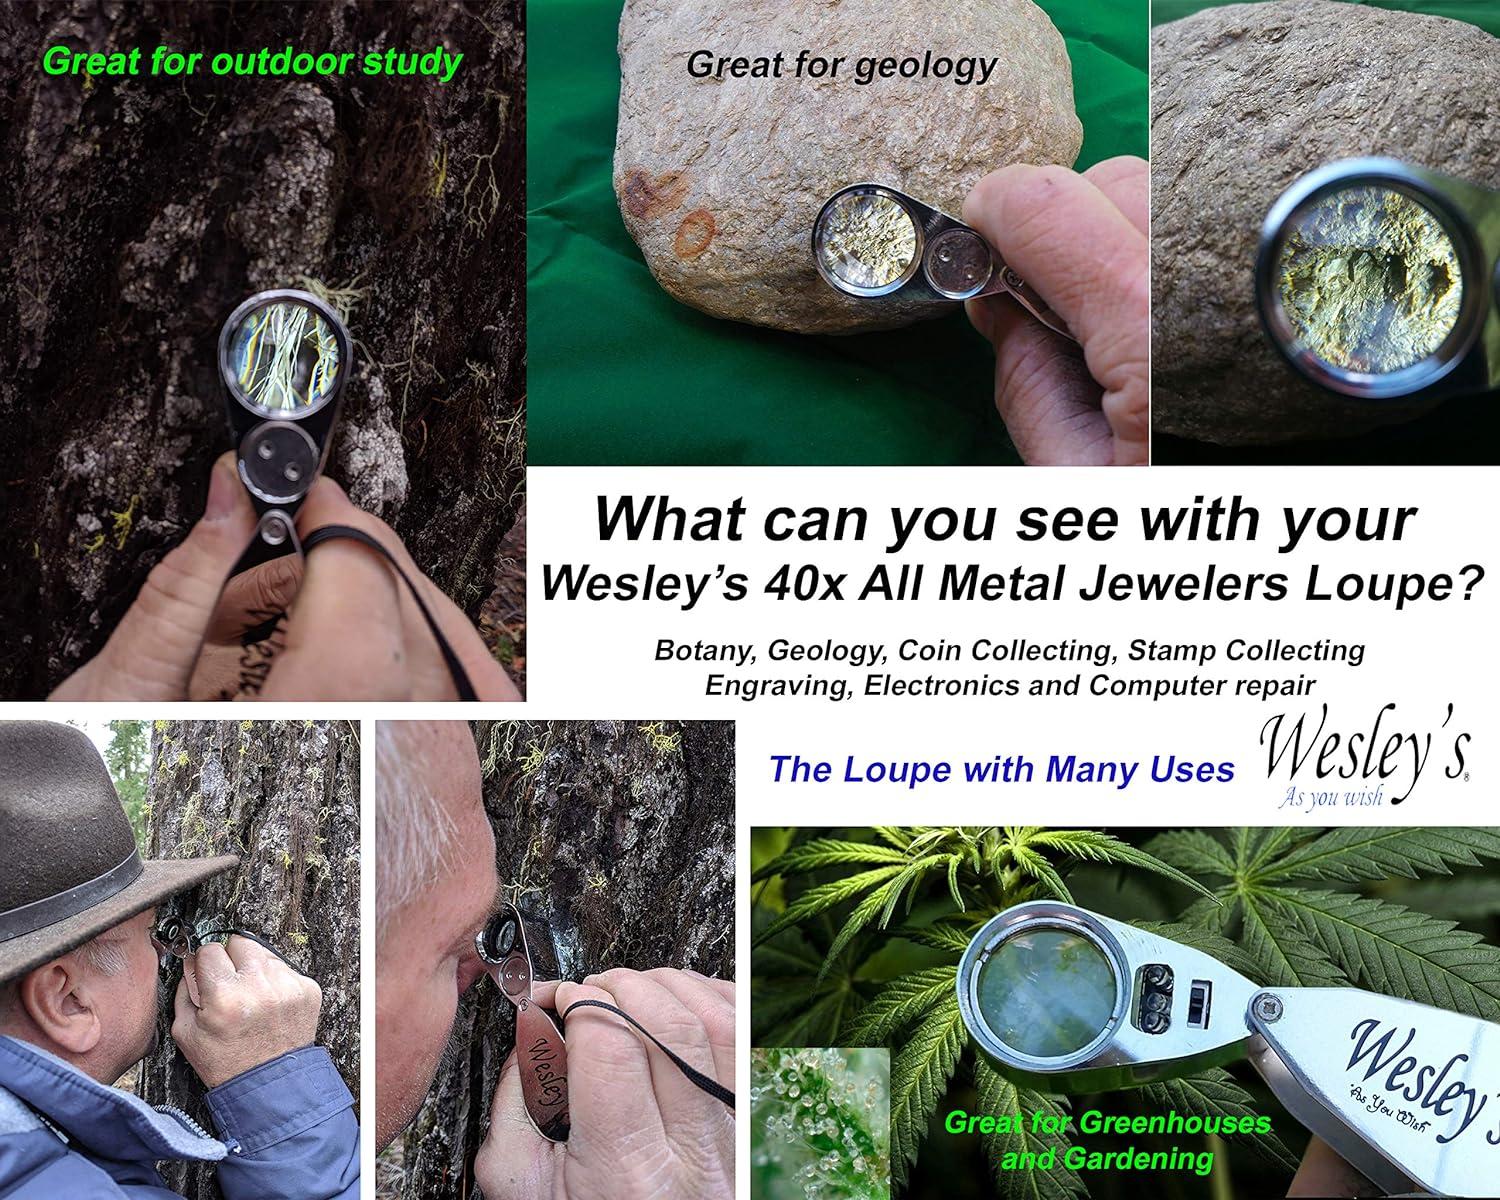 Wesley's as you wish Jewelers Loupe 30X 60X LED Illuminated